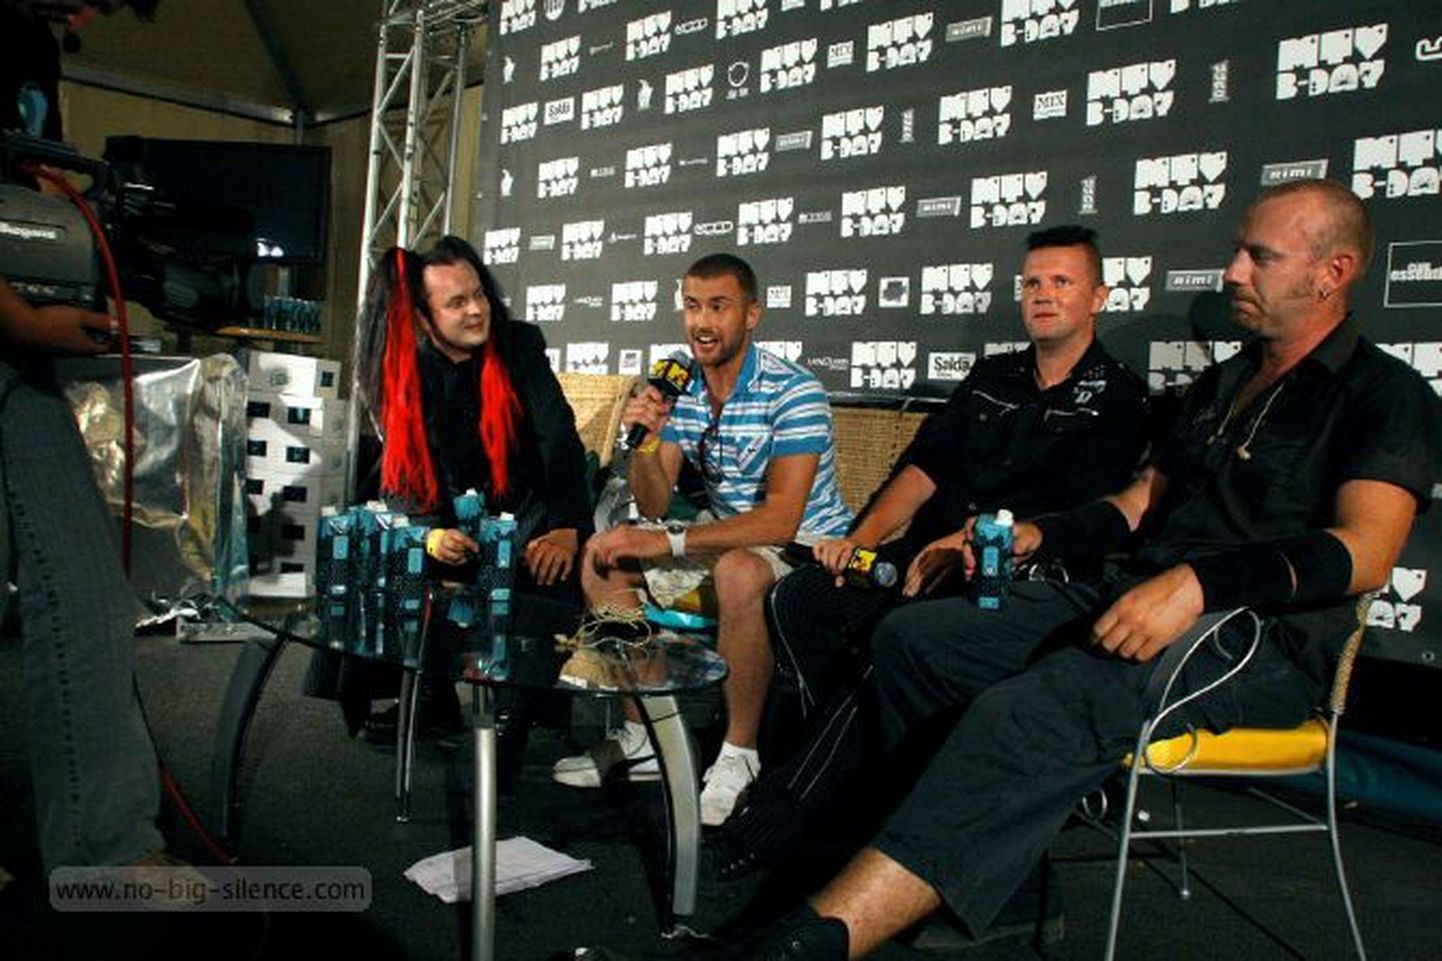 No-Big-Silence eelmisel aastal MTV sünnipäevapeol